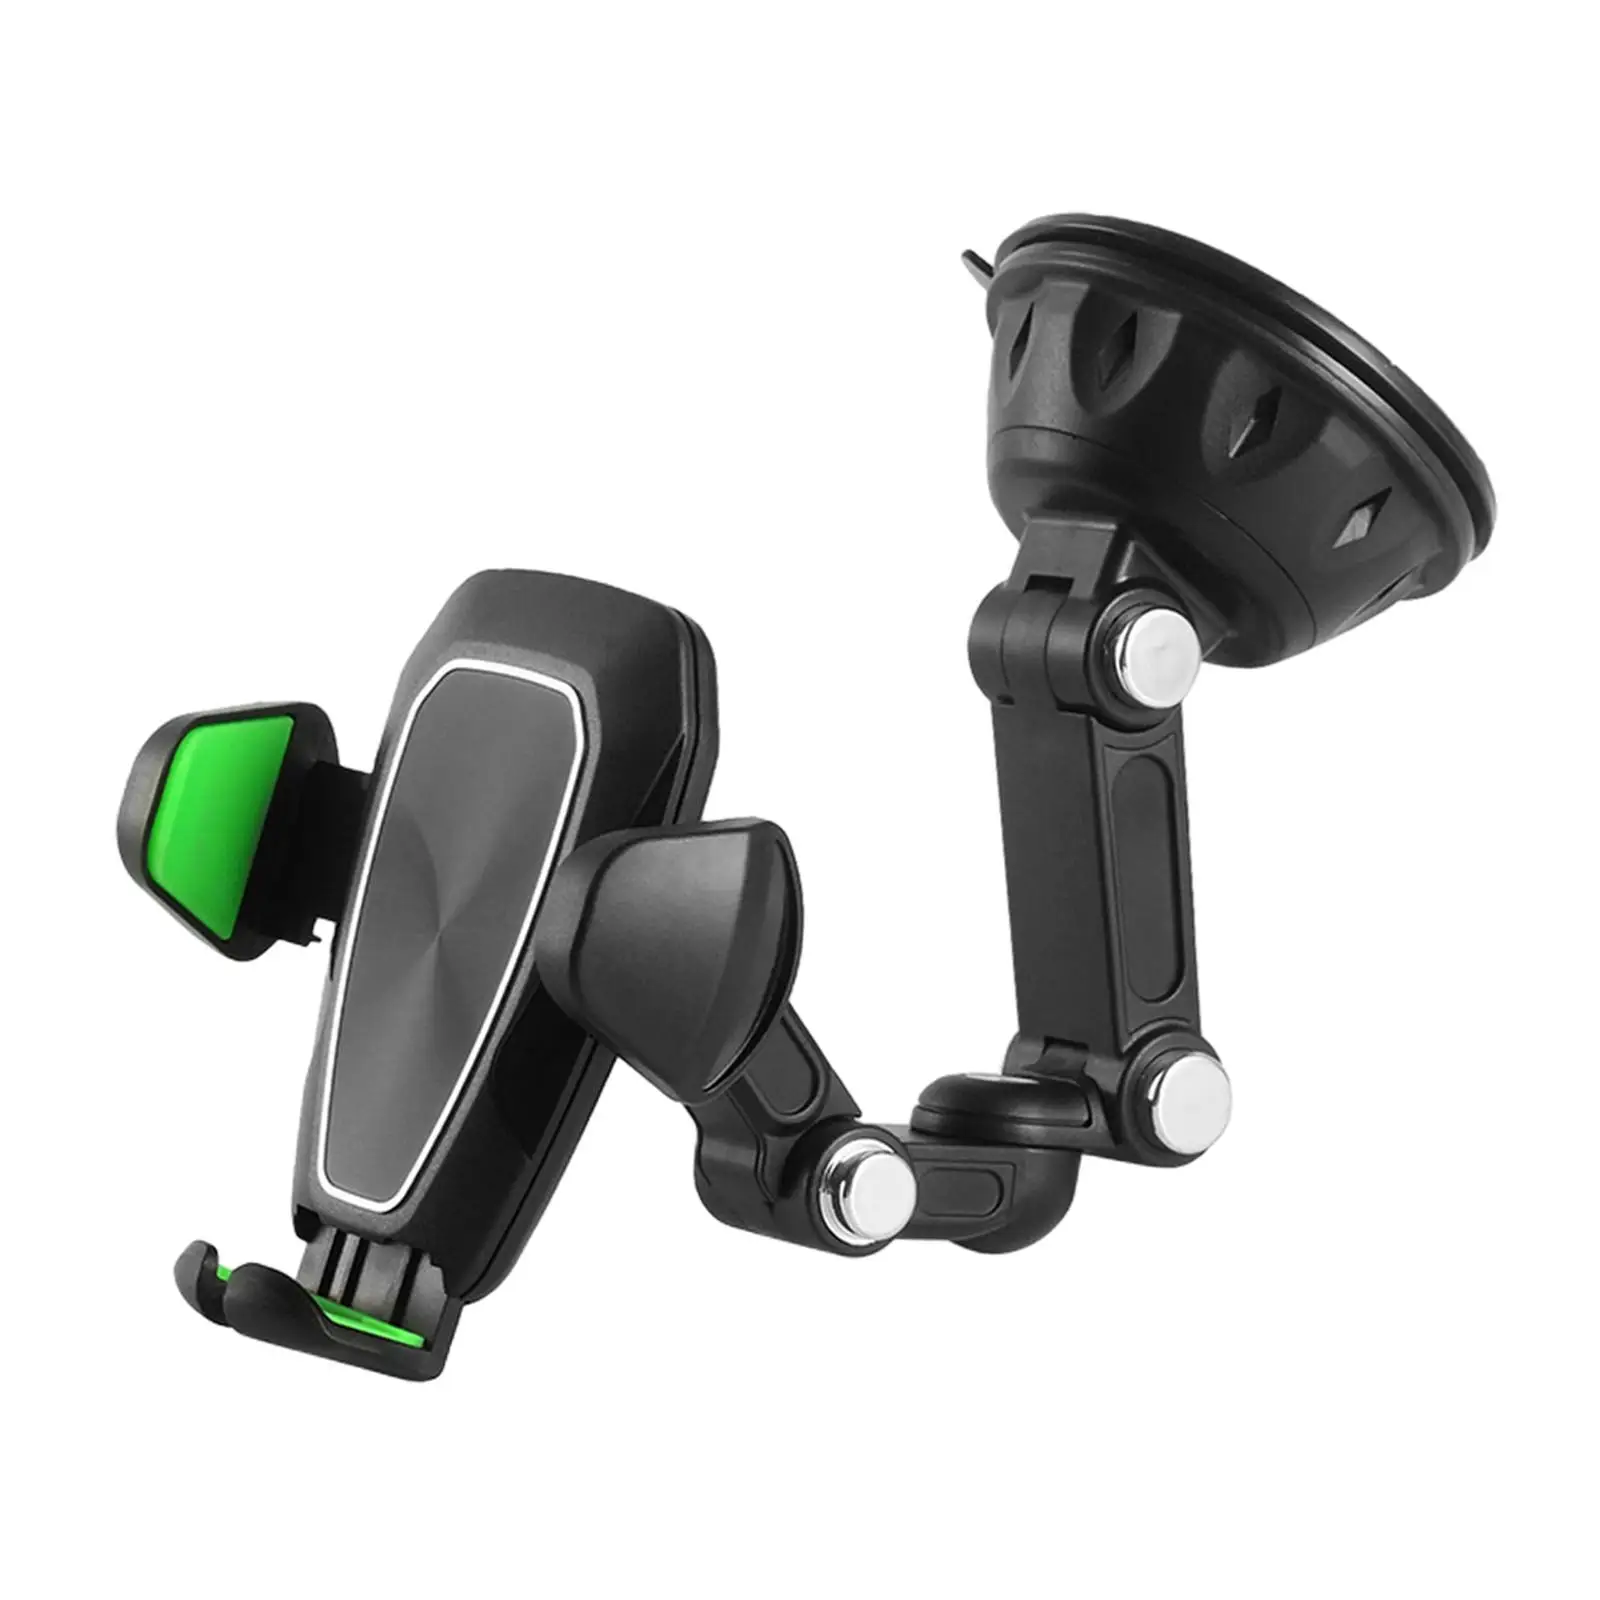 Automobile Cellphone Holder Non Slip Car Phone Holder Mount Car Navigation Bracket Phone Mount for Car Dashboard Windshield